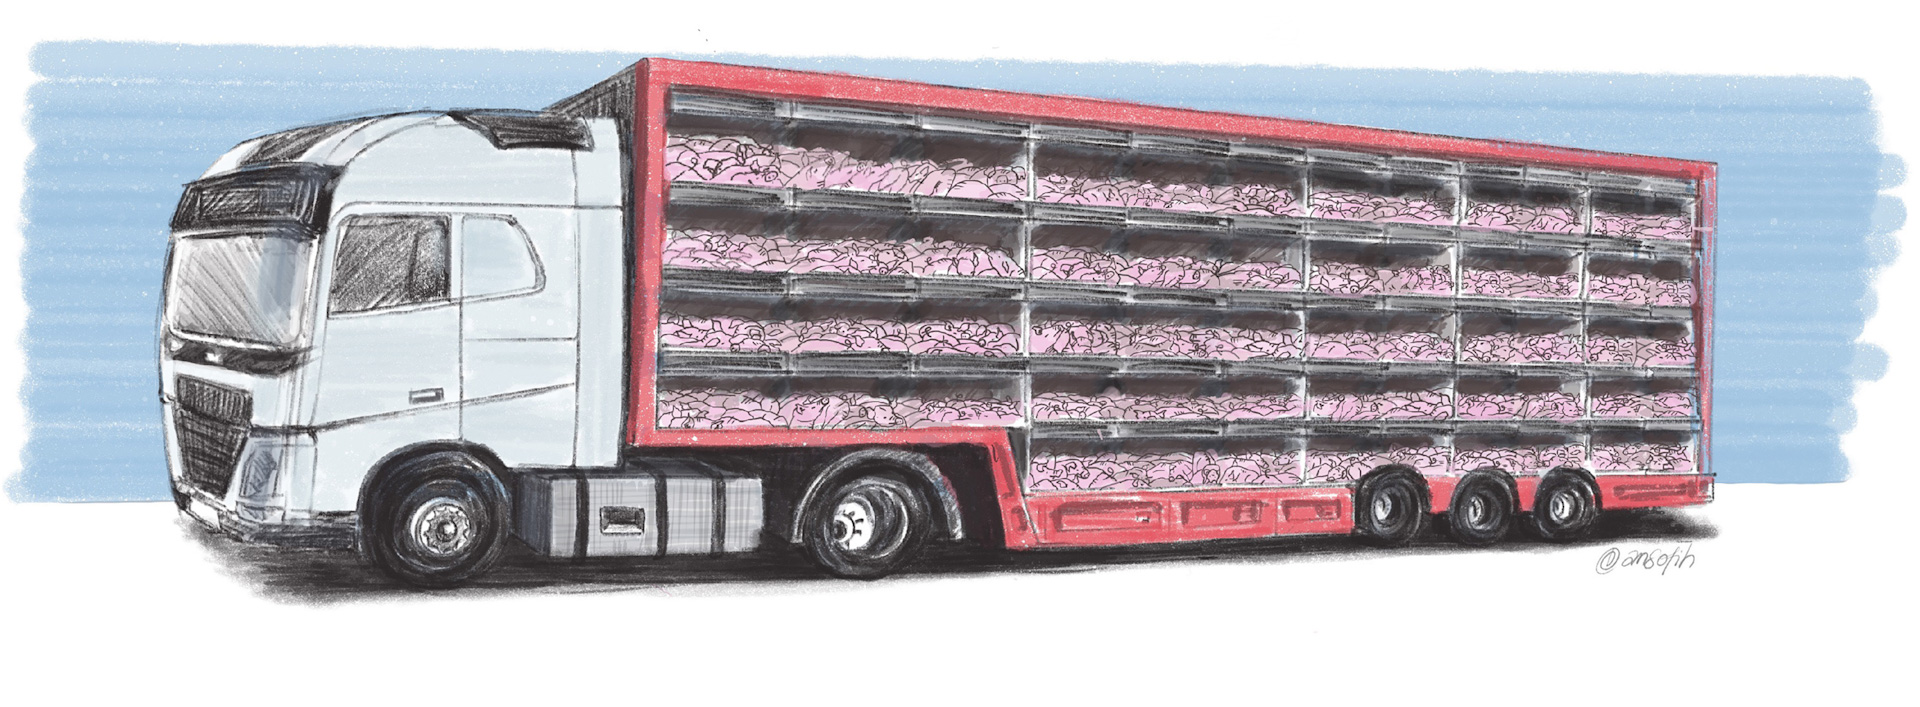 Illustration af grisetransport i fem etager